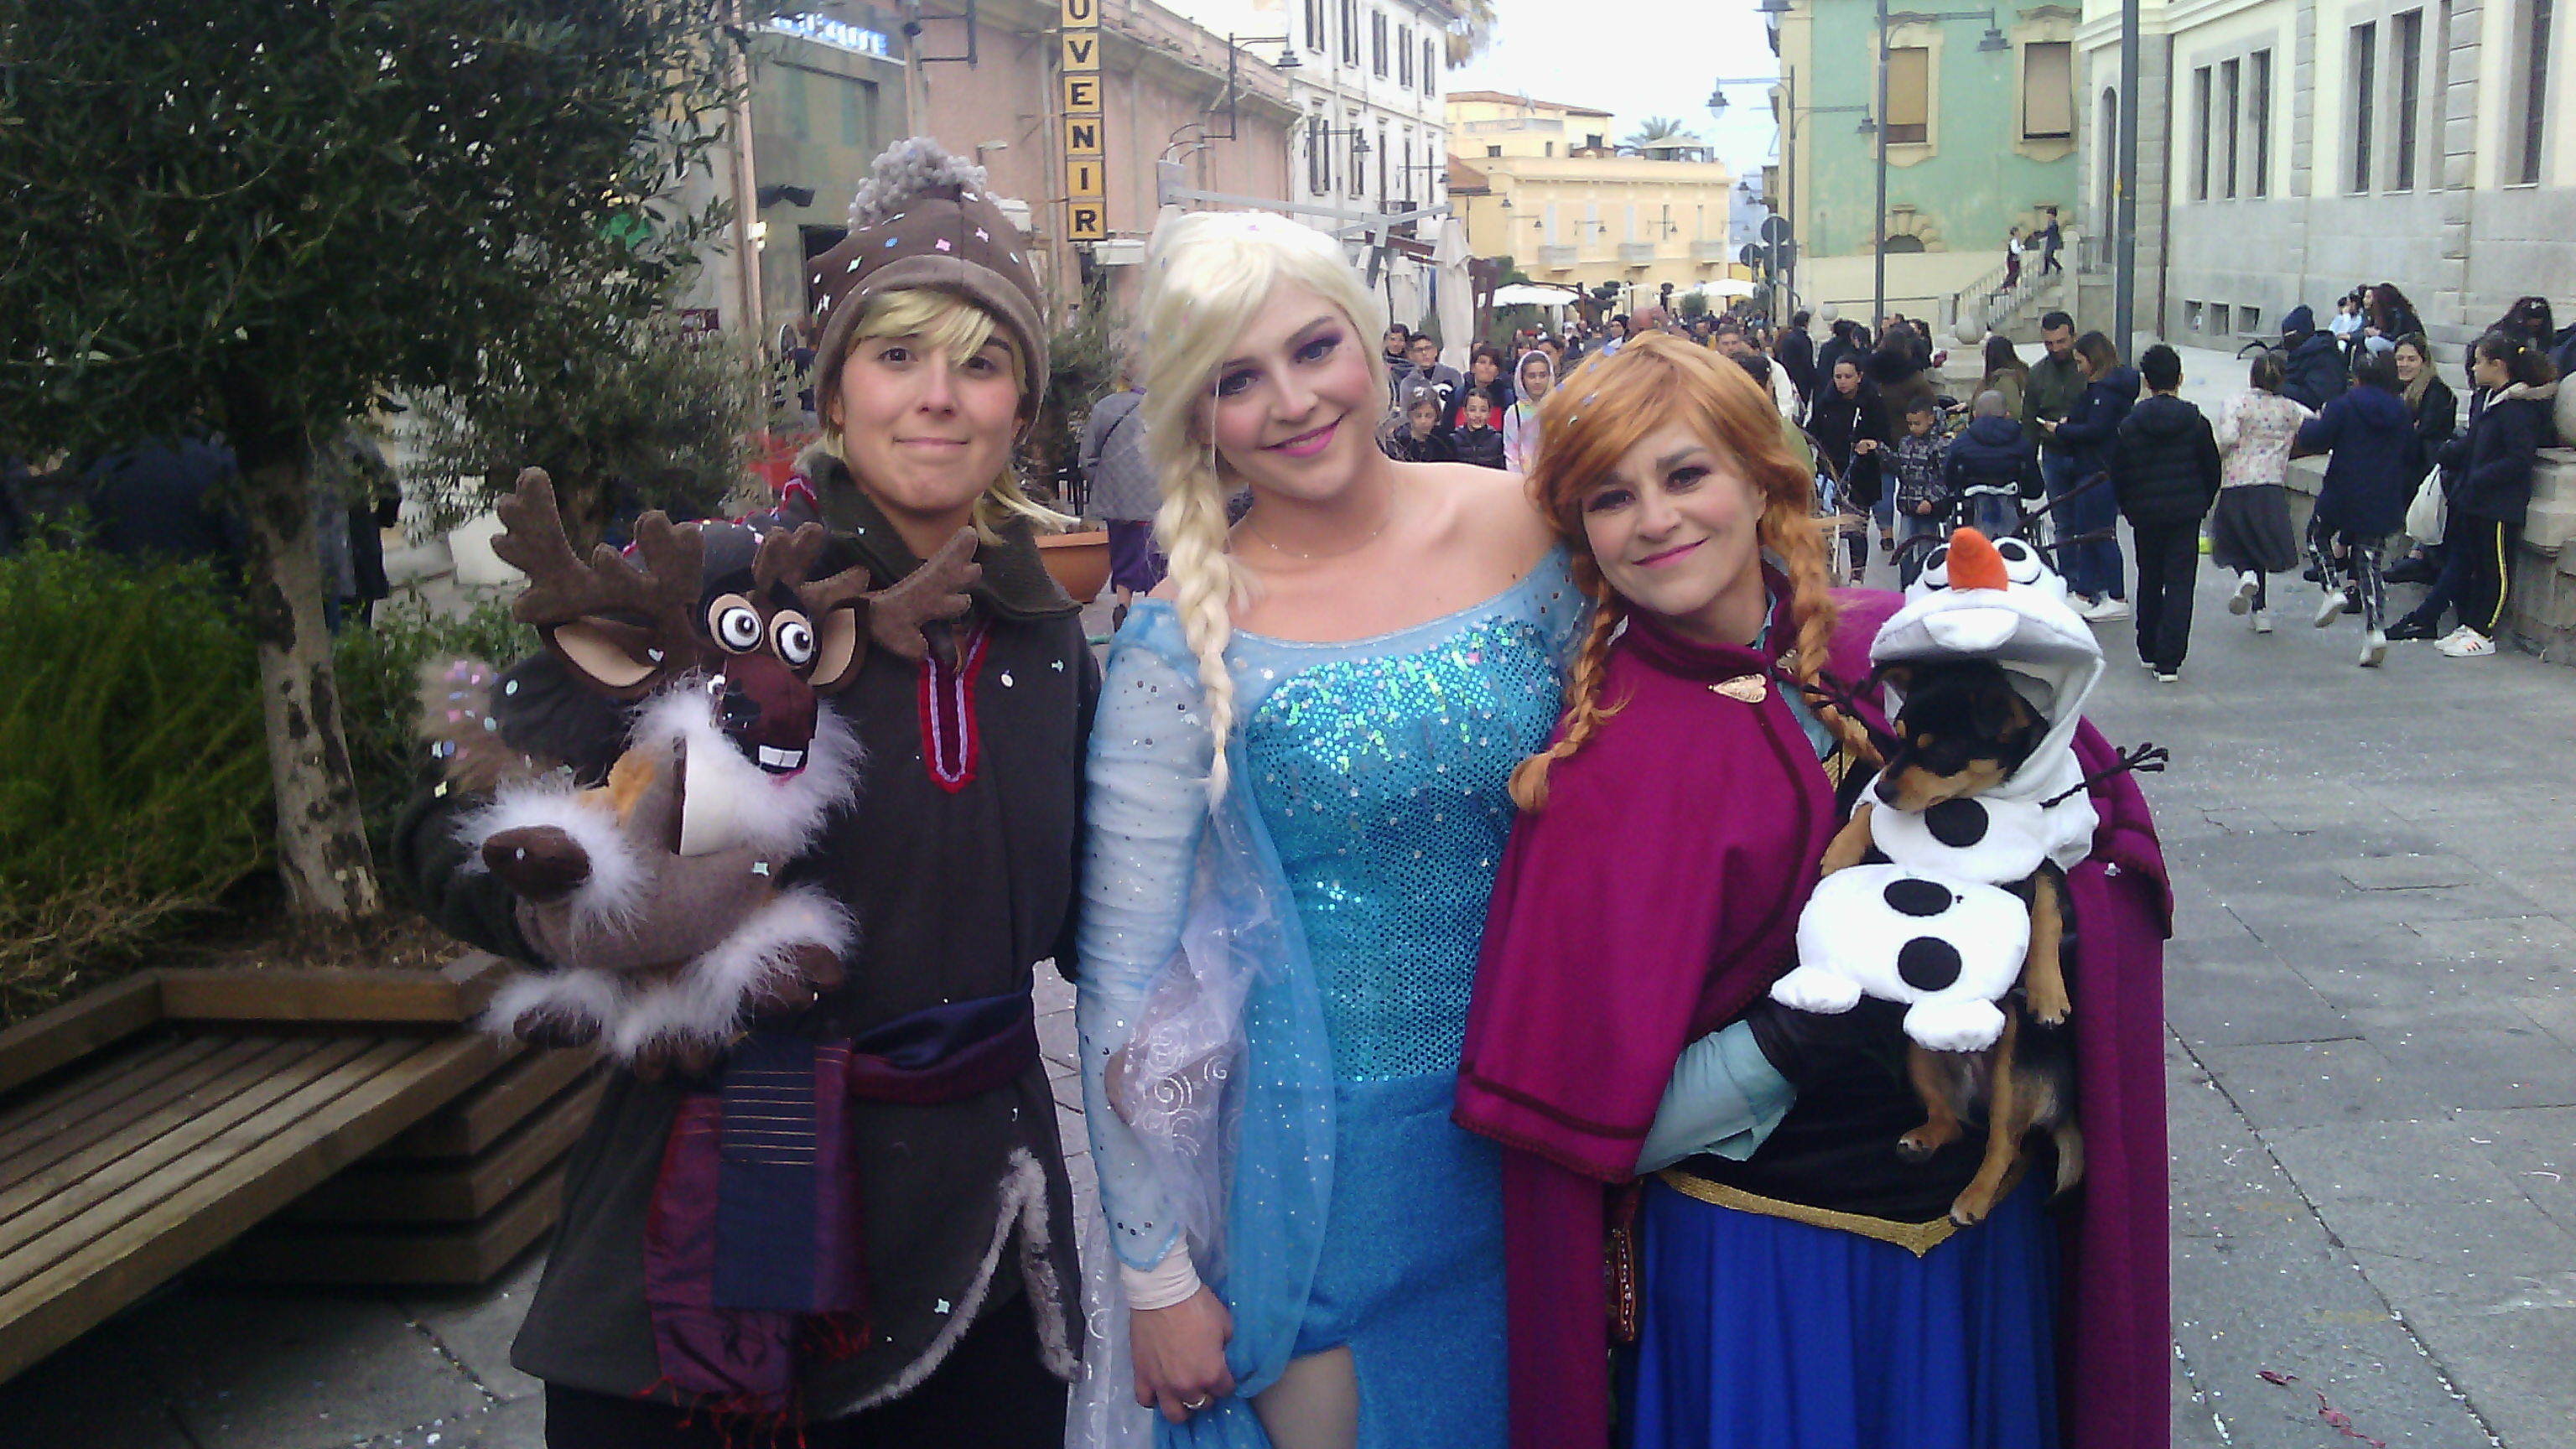 Da Nuoro a Olbia per il Carnevale: ecco il gruppo Frozen con un Olaf molto speciale